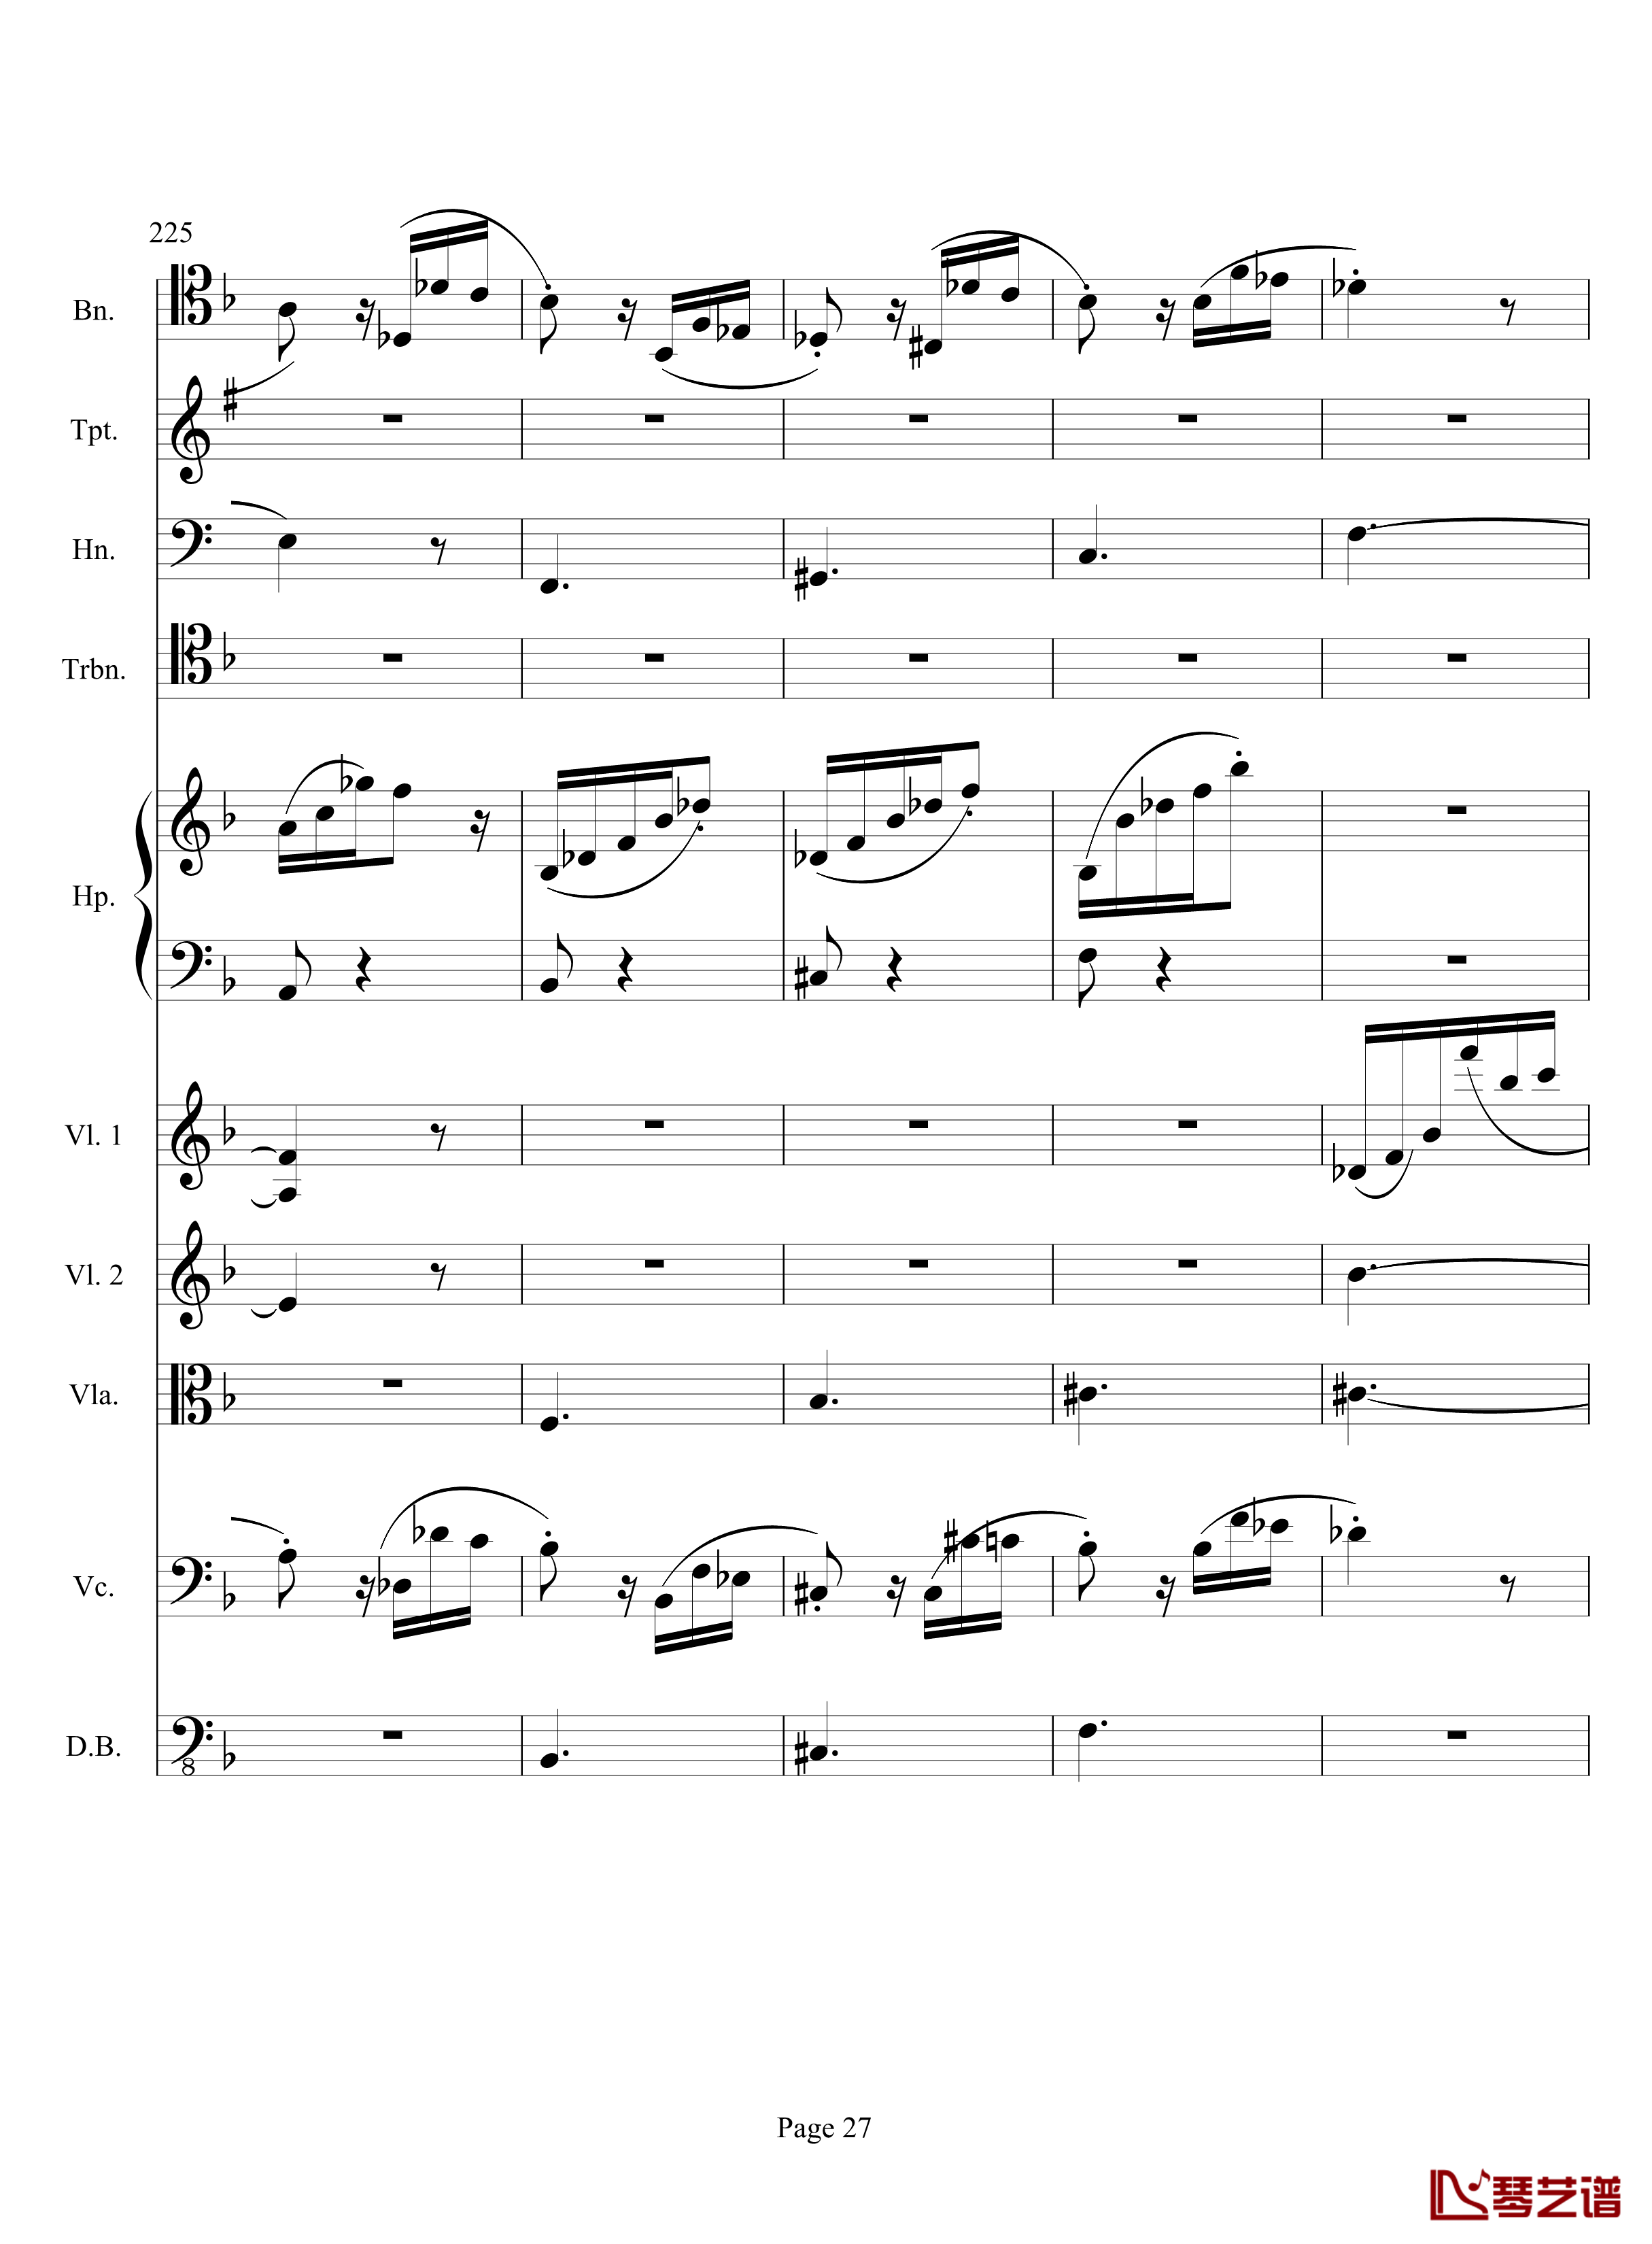 奏鸣曲之交响钢琴谱-第17首-Ⅲ-贝多芬-beethoven27